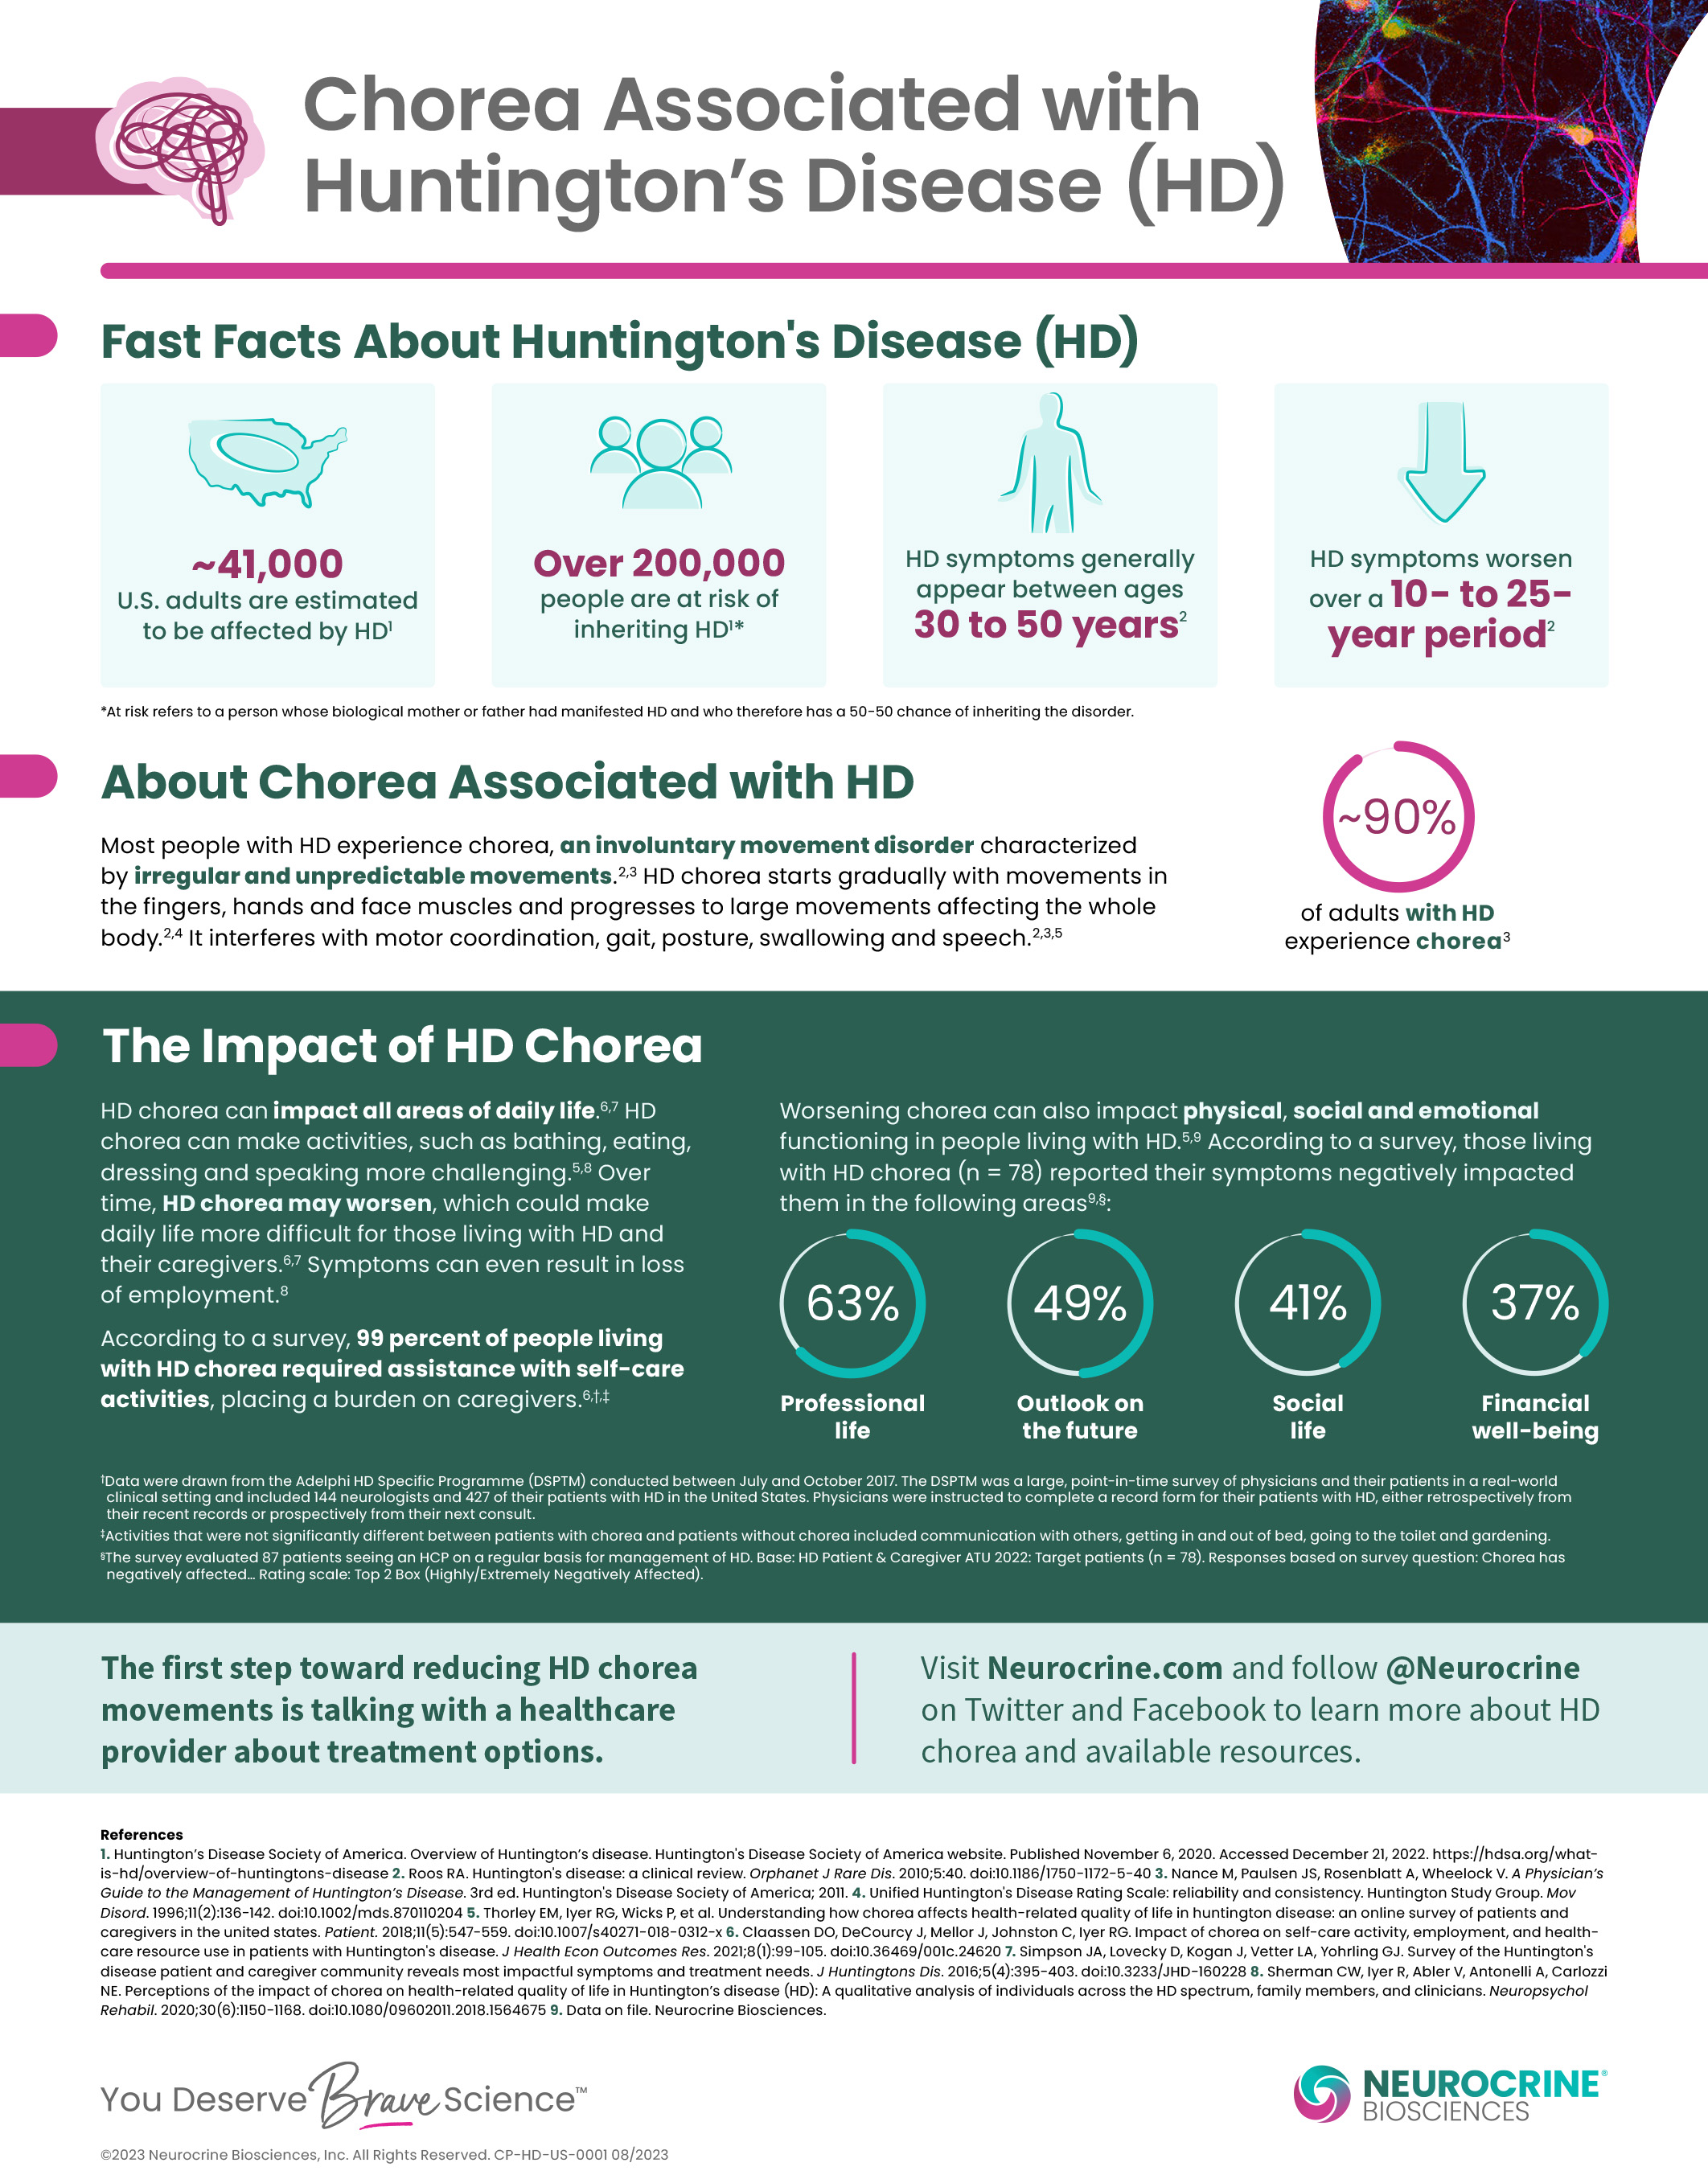 Chorea in HD Fact Sheet